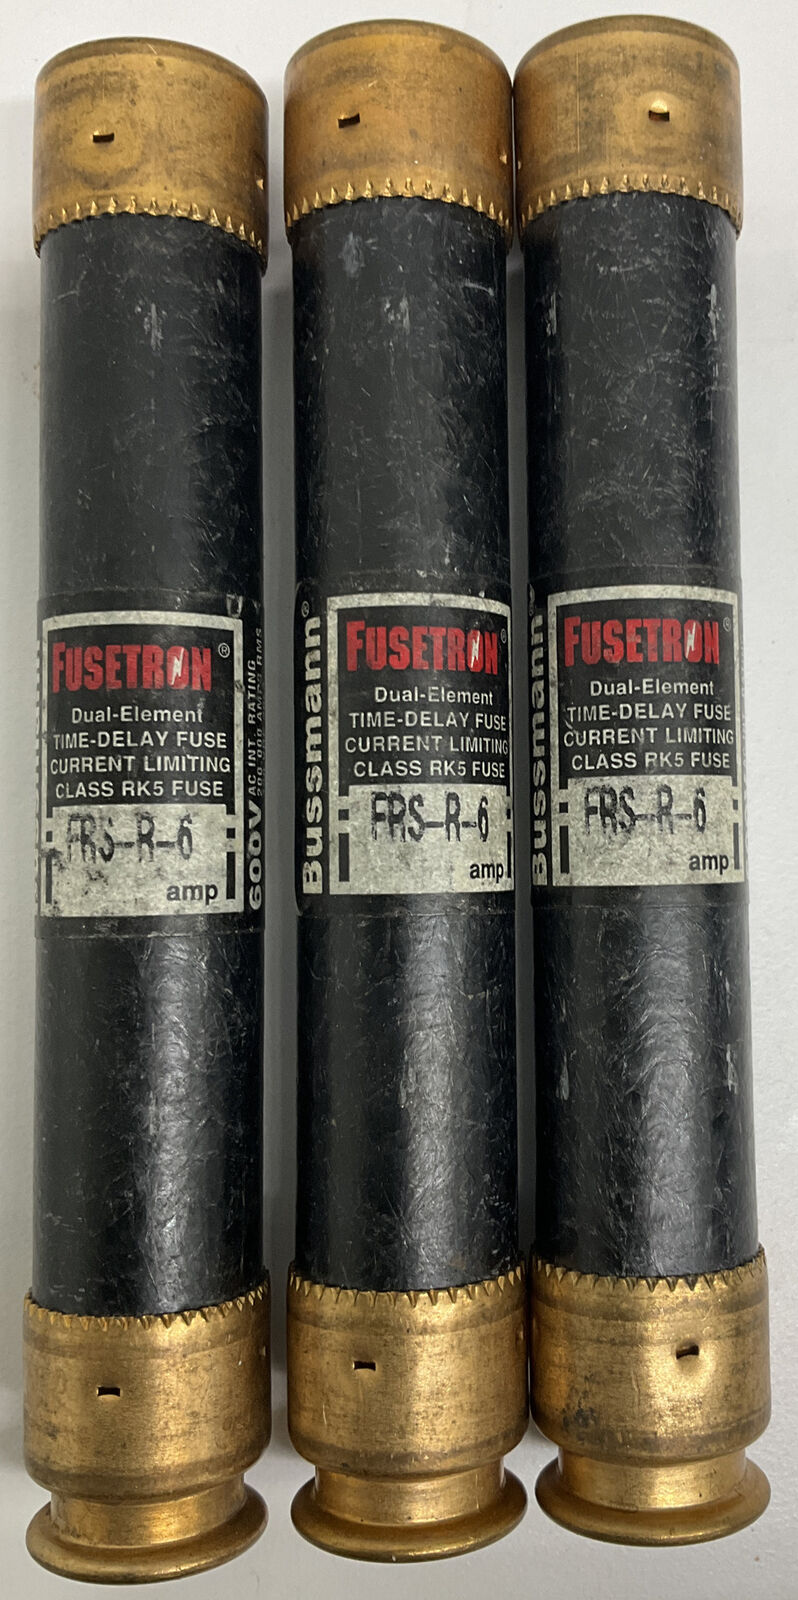 Bussmann Fusetron FRS-R-6 Lot of 3 Dual Element Fuse (BL209) - 0